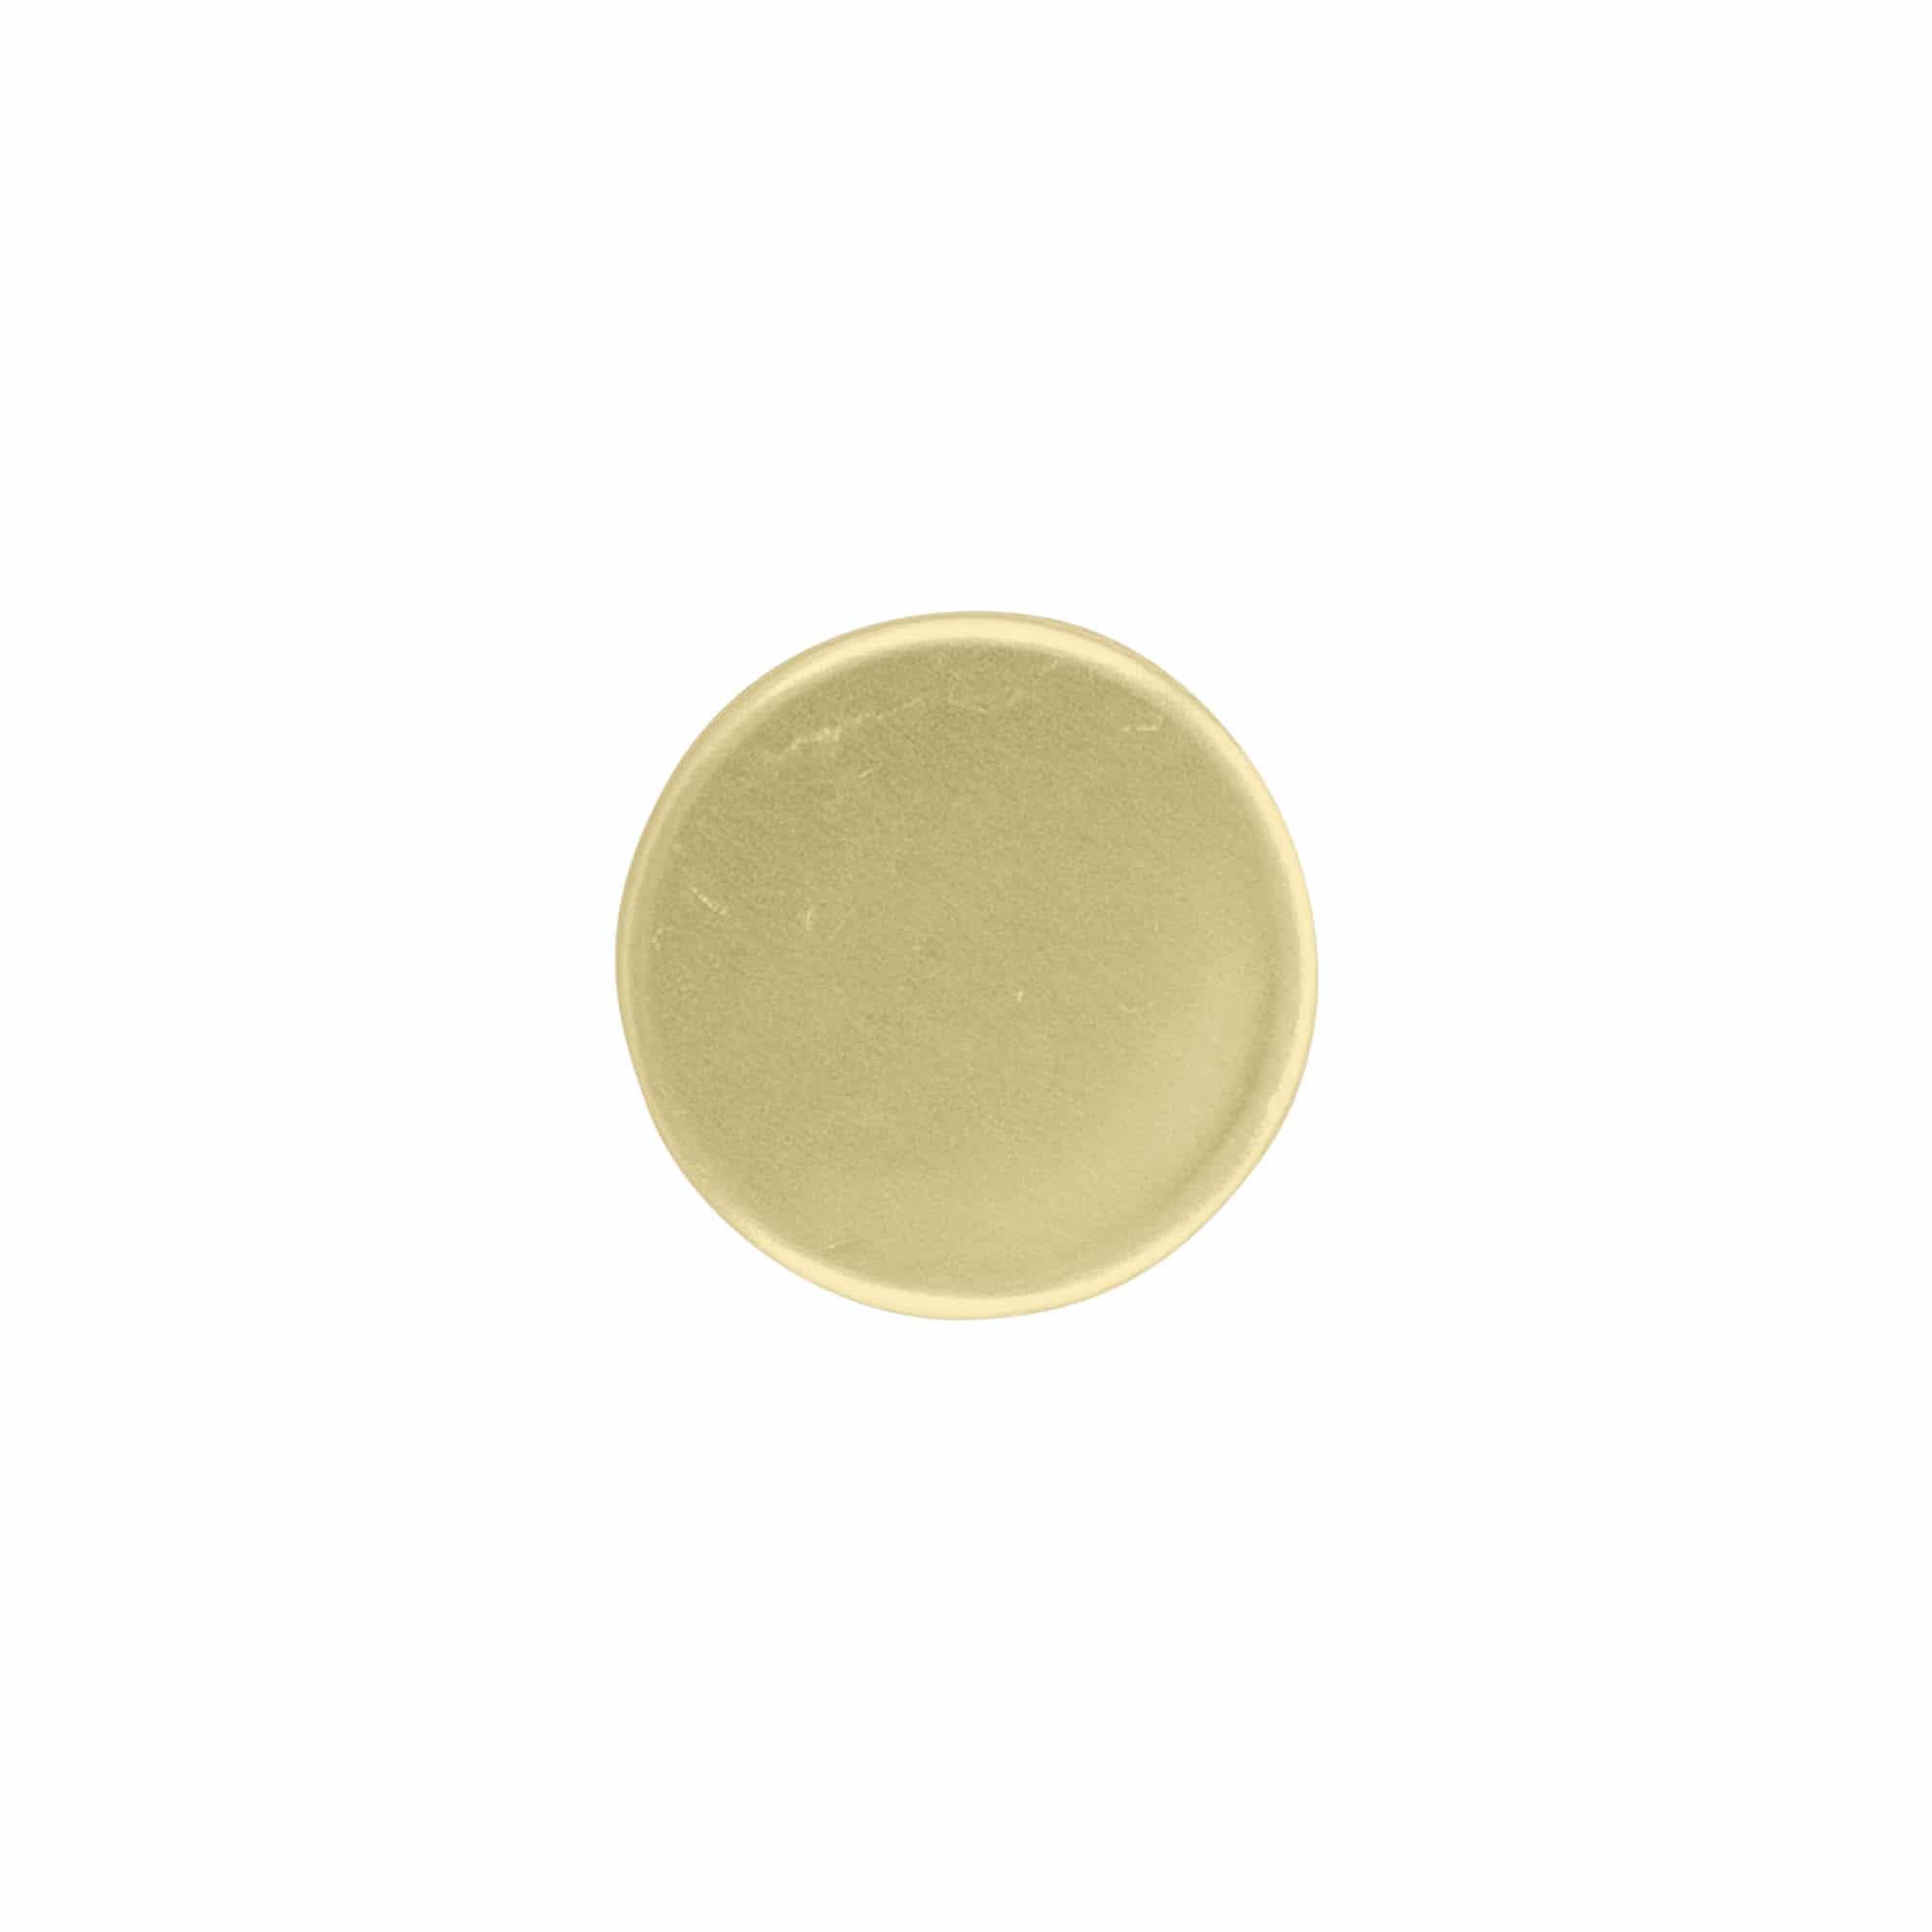 Zakrętka z wkładką wylewki, metal i tworzywo sztuczne, kolor złoty, do zamknięcia: PP 31,5